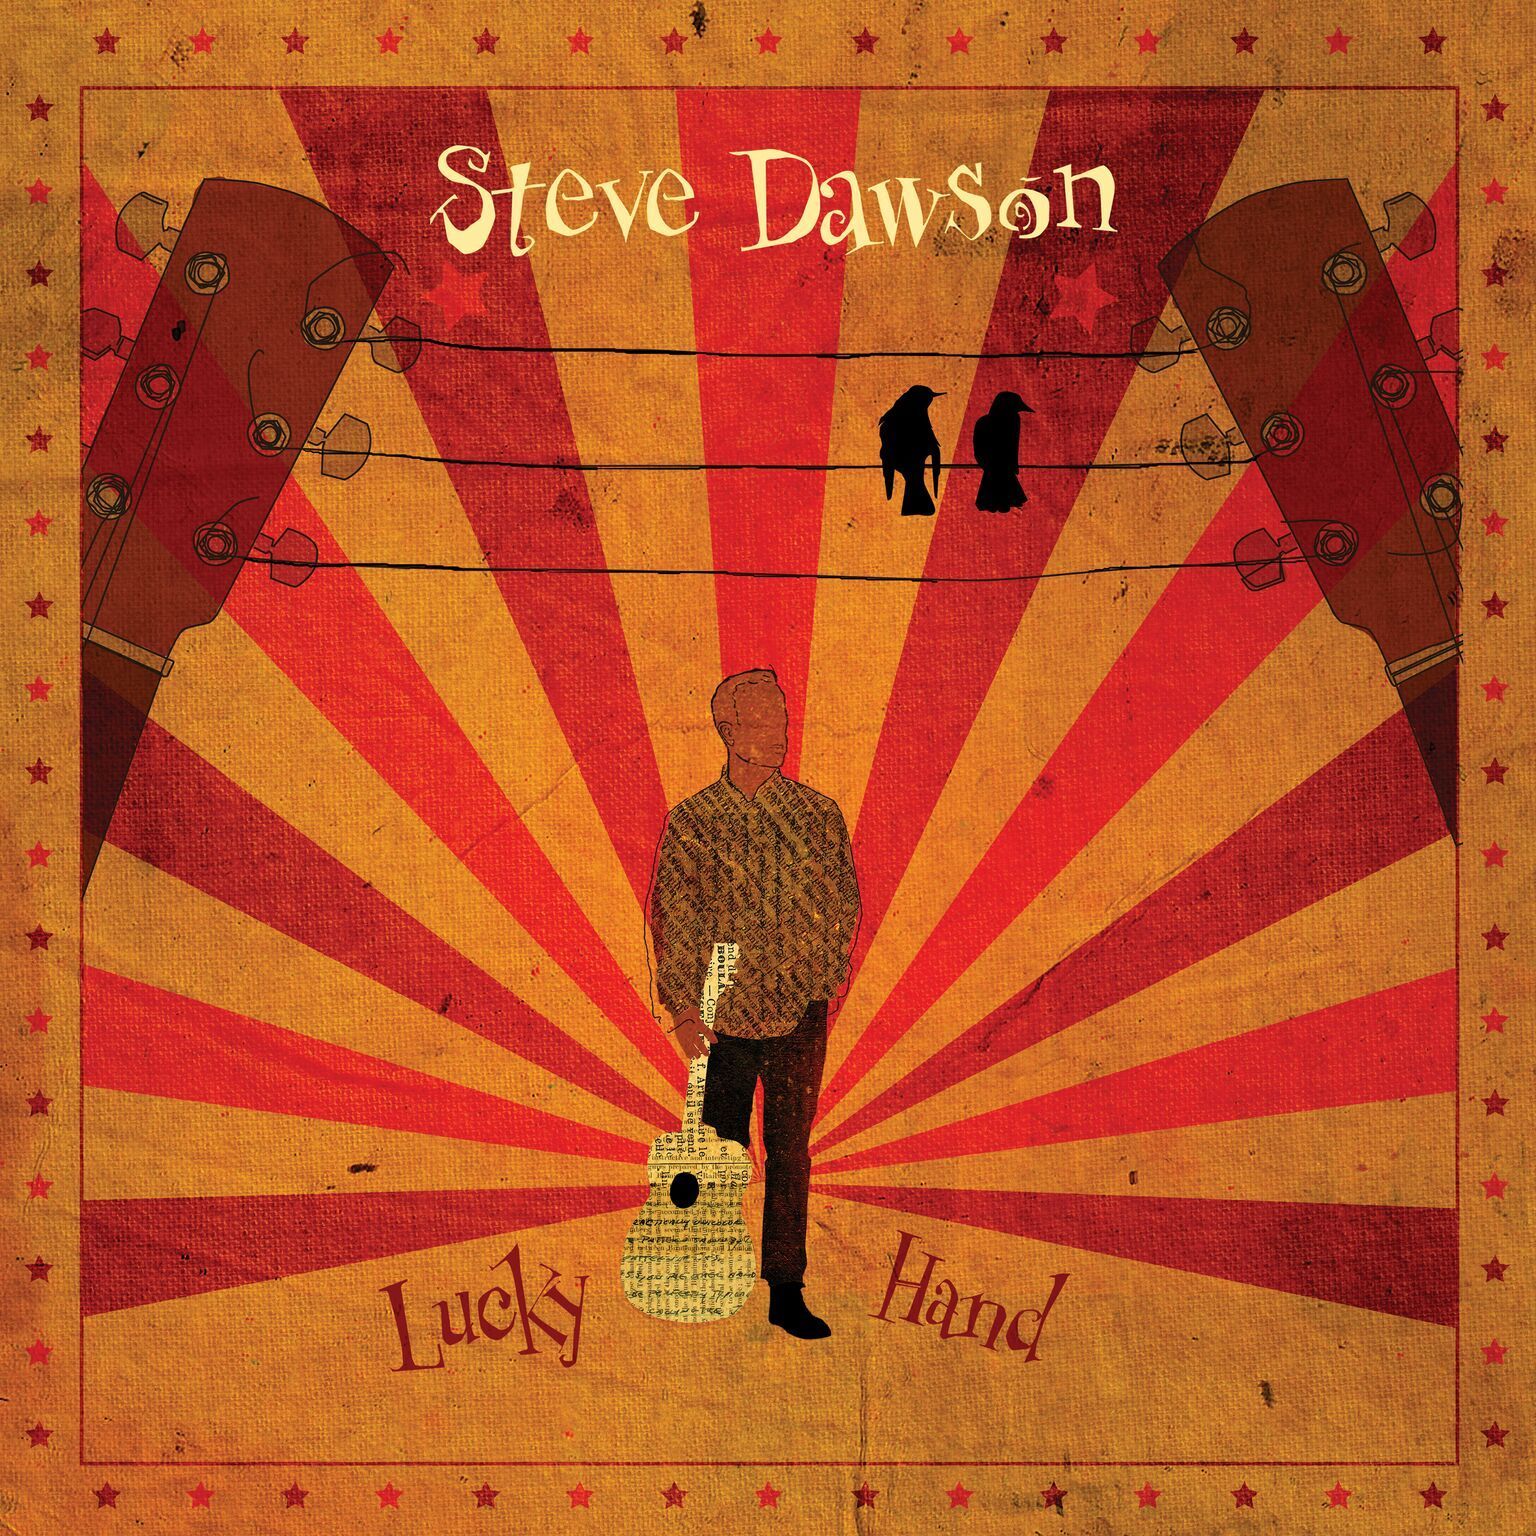 Dawson, Steve - Lucky Hand